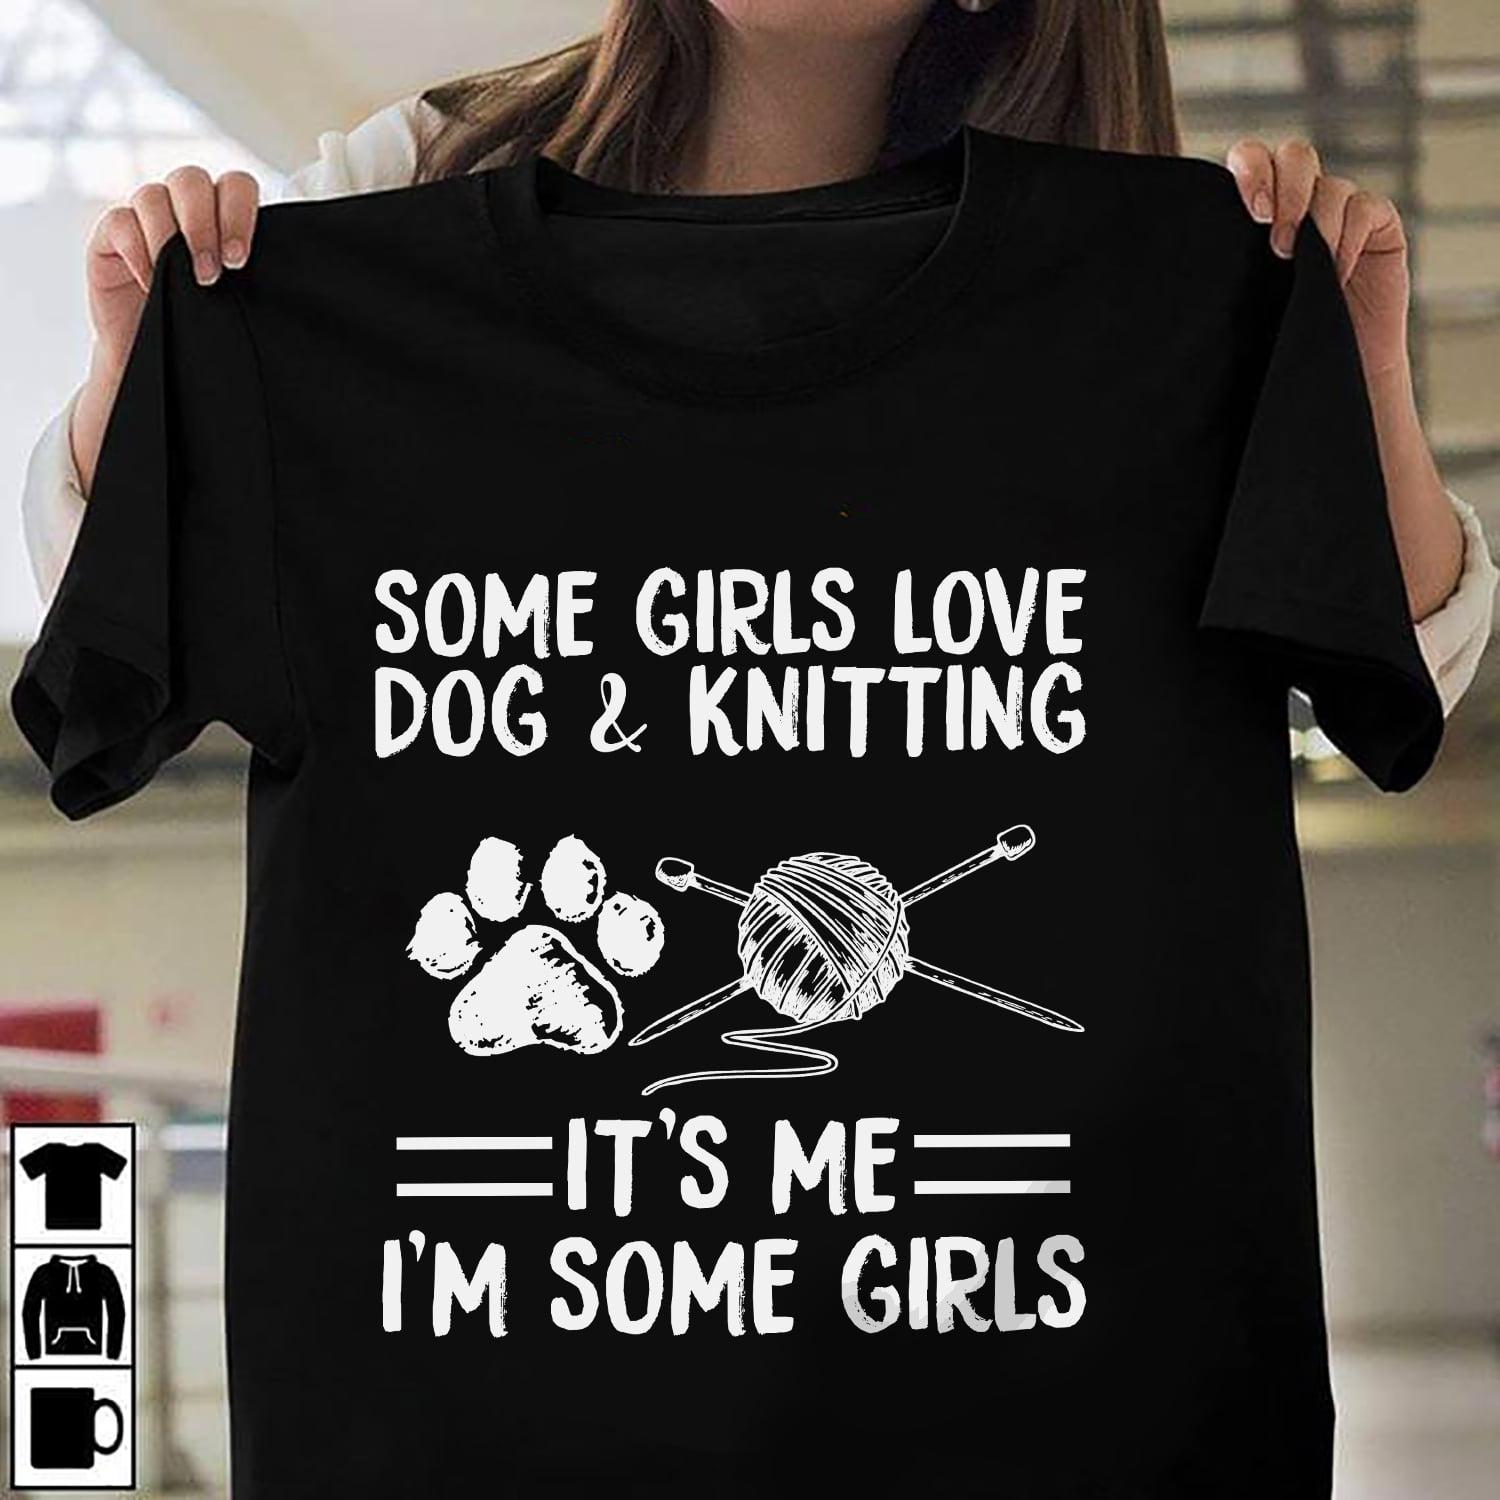 Some girls love dog and knitting - Love knitting yarn, dog footprint